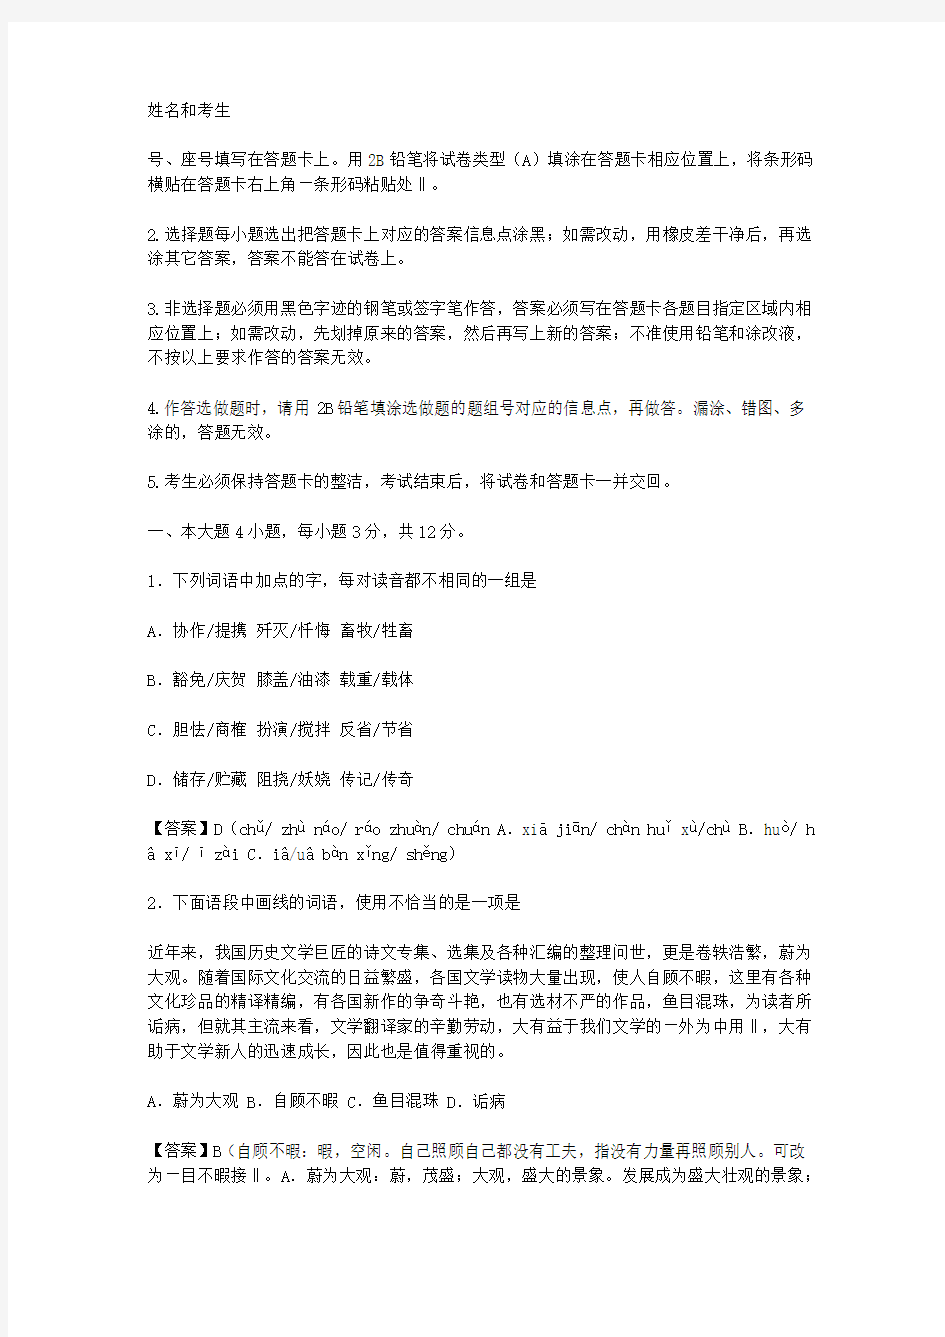 2011年广东省高考语文试题及答案(高清、答案详细)